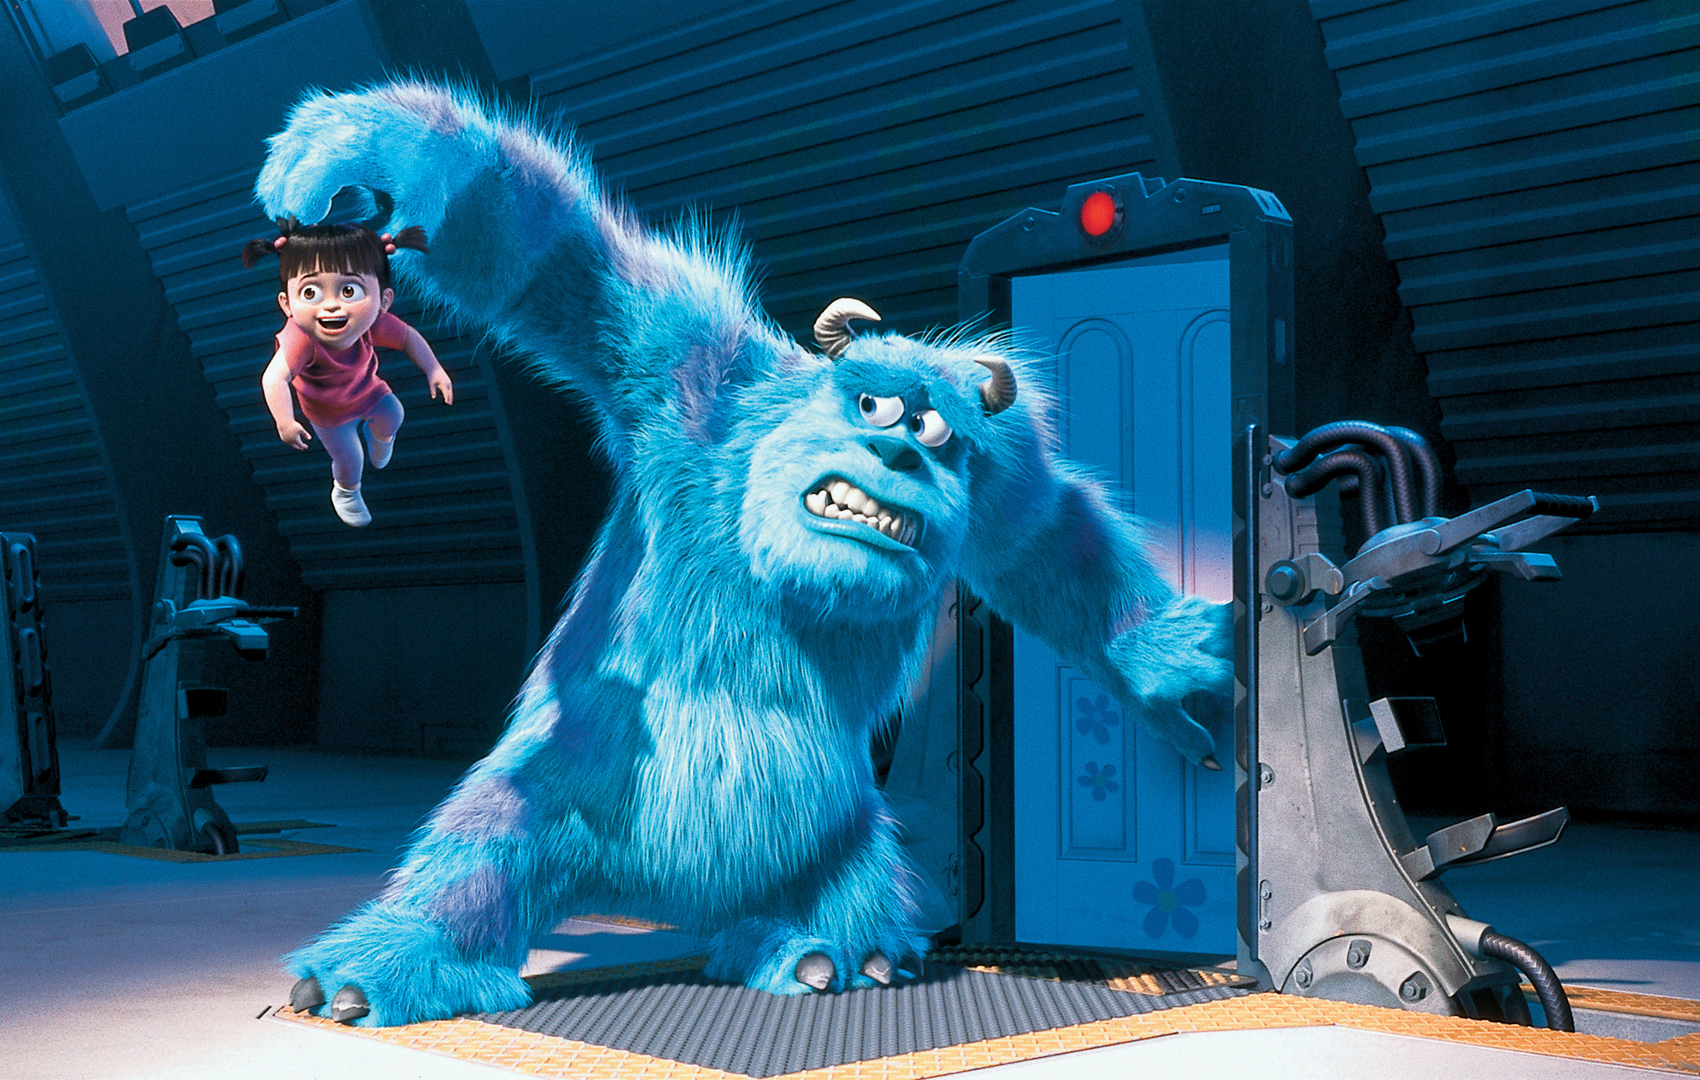 Animationsfilm: Ein blaues, großes Monster will eine Tür öffnen und hält mit ängstlichem Blick ein Kleinkind eine Armlänge von sich entfernt.